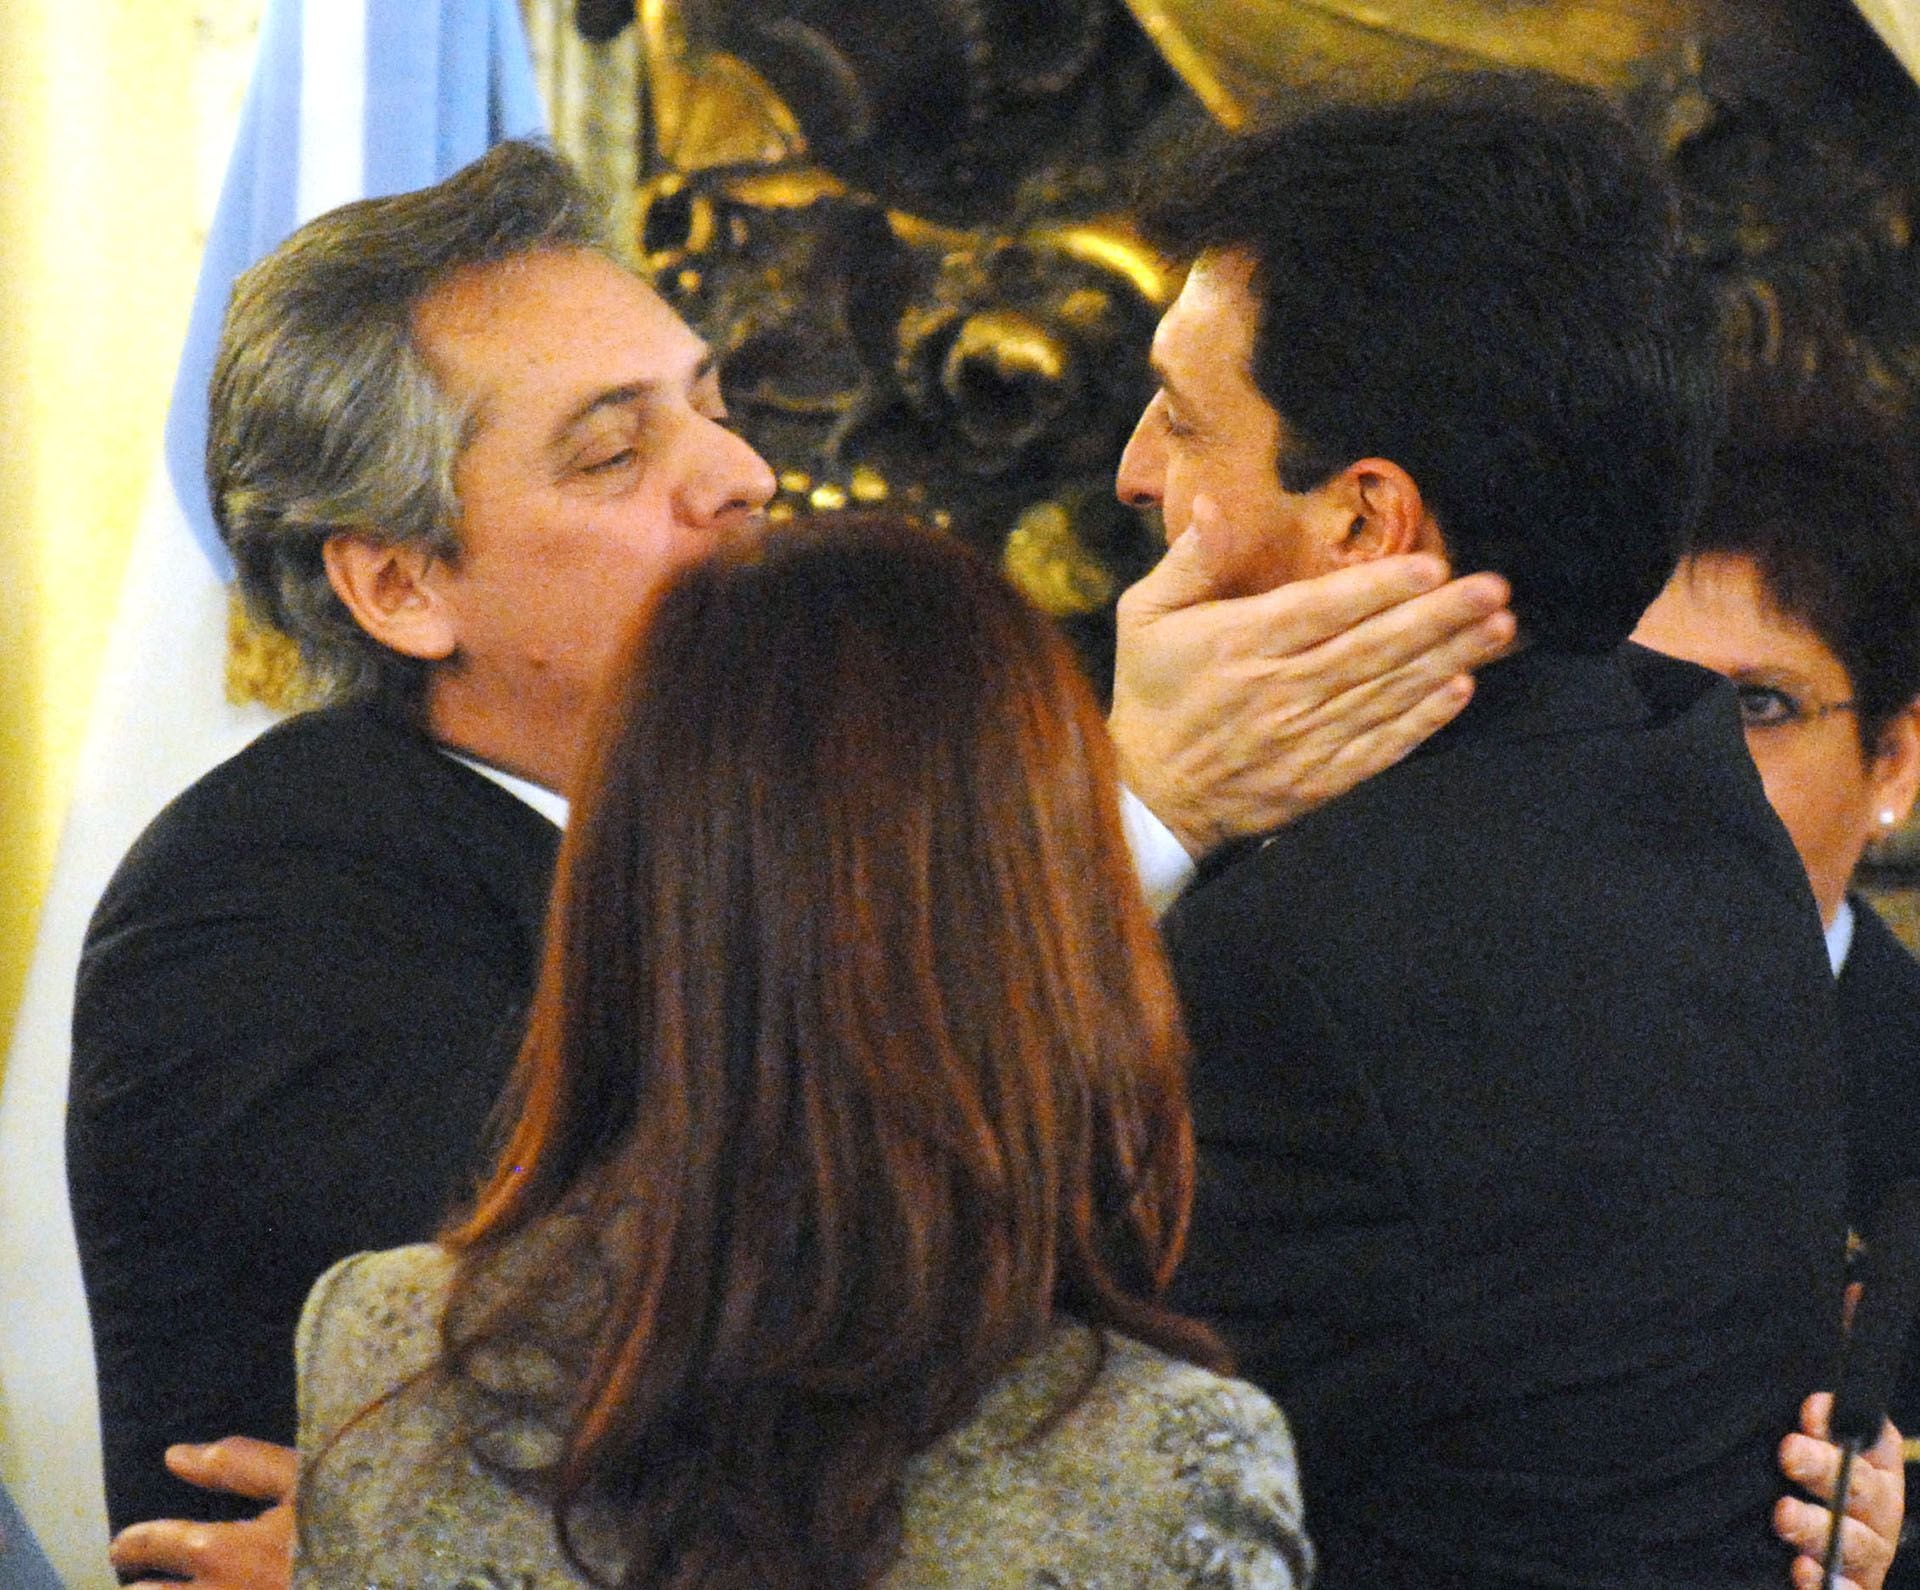 Alberto Fernández fue reemplazado por el entonces intendente de Tigre, Sergio Massa, una elección que corrió por cuenta de Néstor Kirchner. A pesar del momento, Fernández se mostró sonriente y le deseó "suerte". 